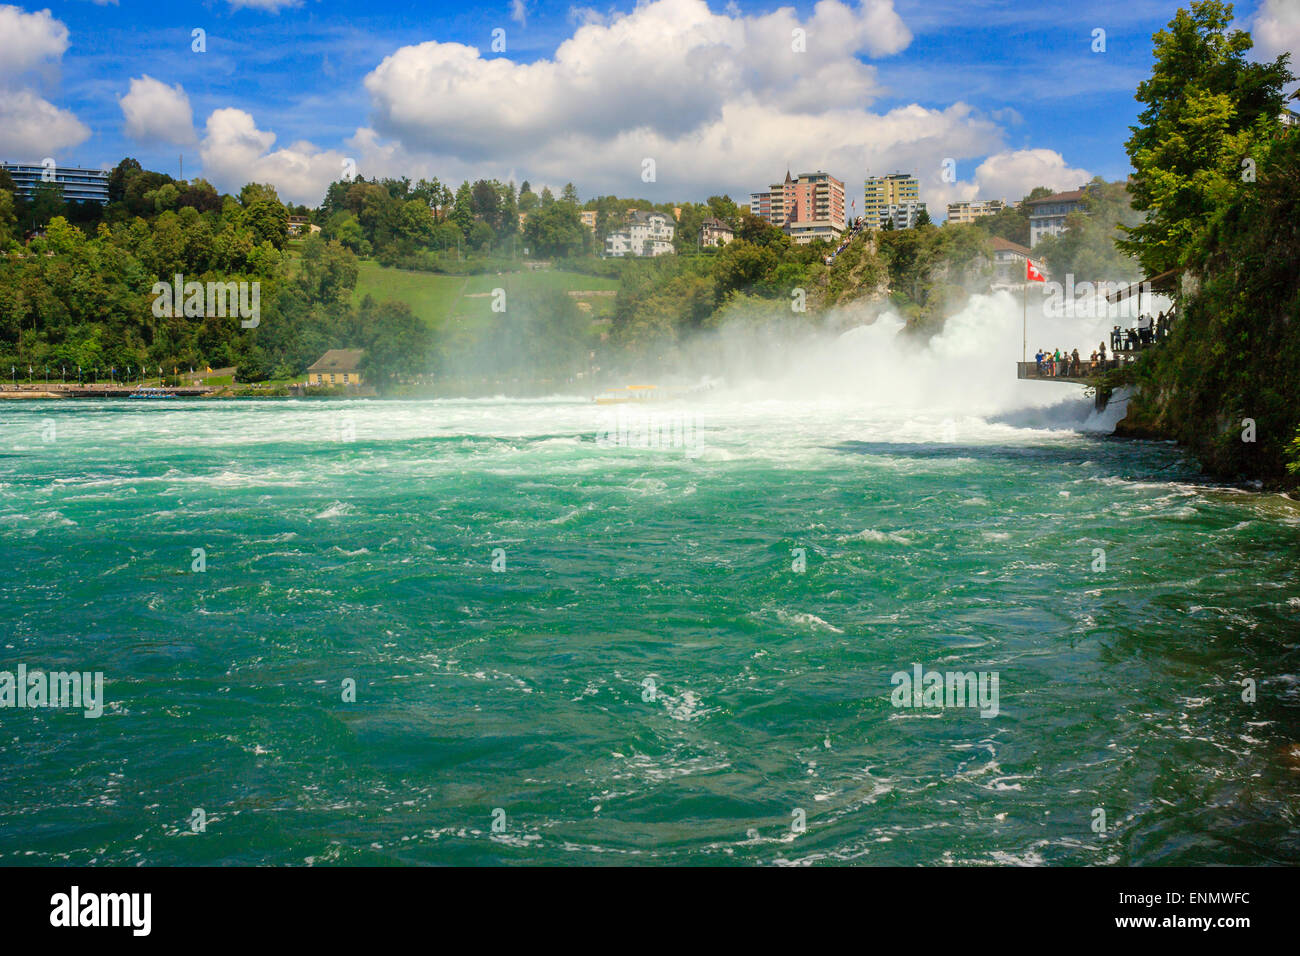 Rheinfall - der grösste Wasserfall Europas, befindet sich in Schaffhausen, Schweiz Stockfoto